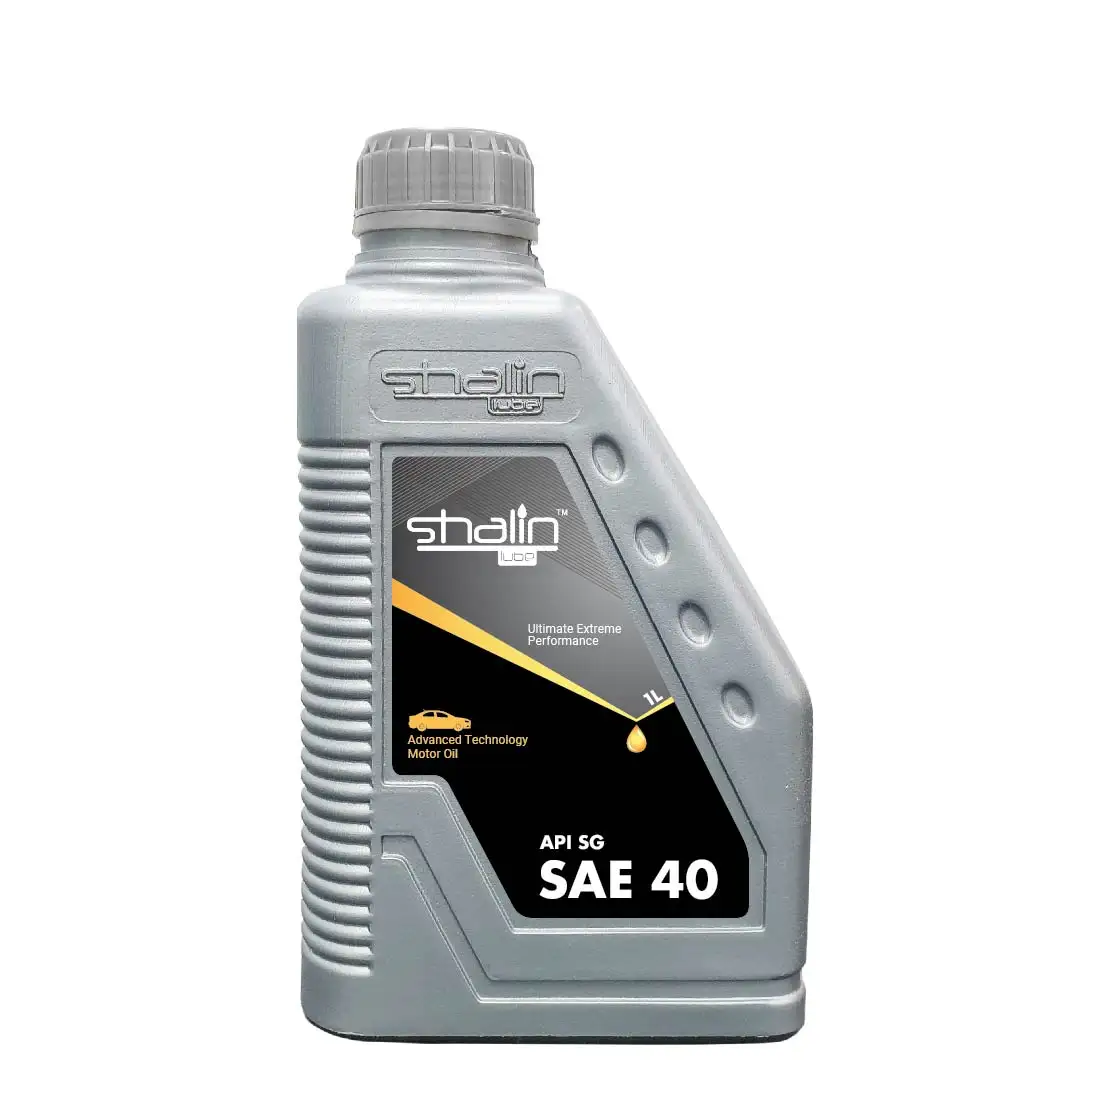 Sholin SAE 40 SG essence huile moteur produit chaud huile moteur populaire à dubaï